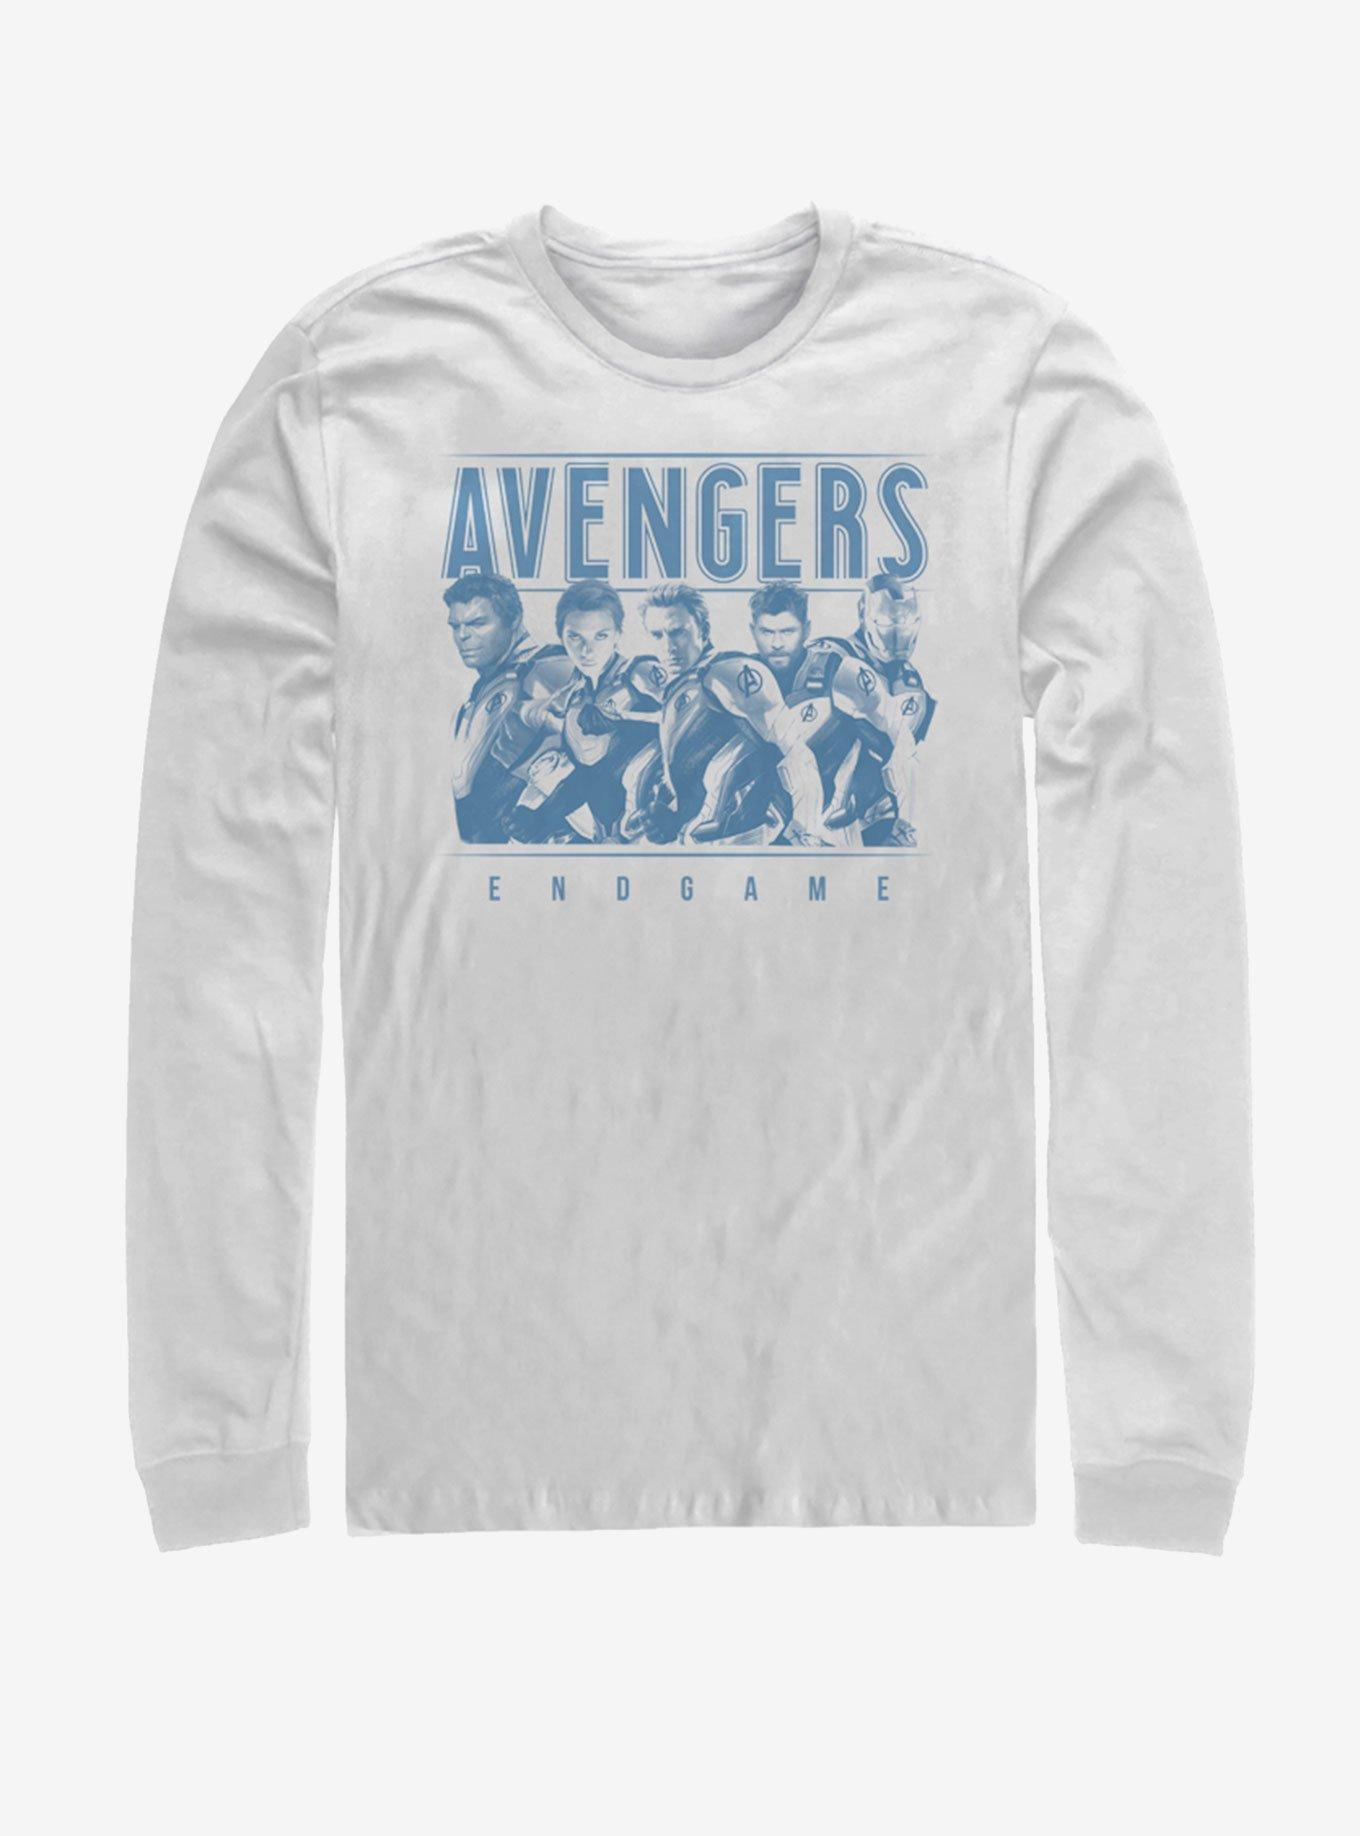 Marvel Avengers: Endgame Avenger Group Long-Sleeve T-Shirt